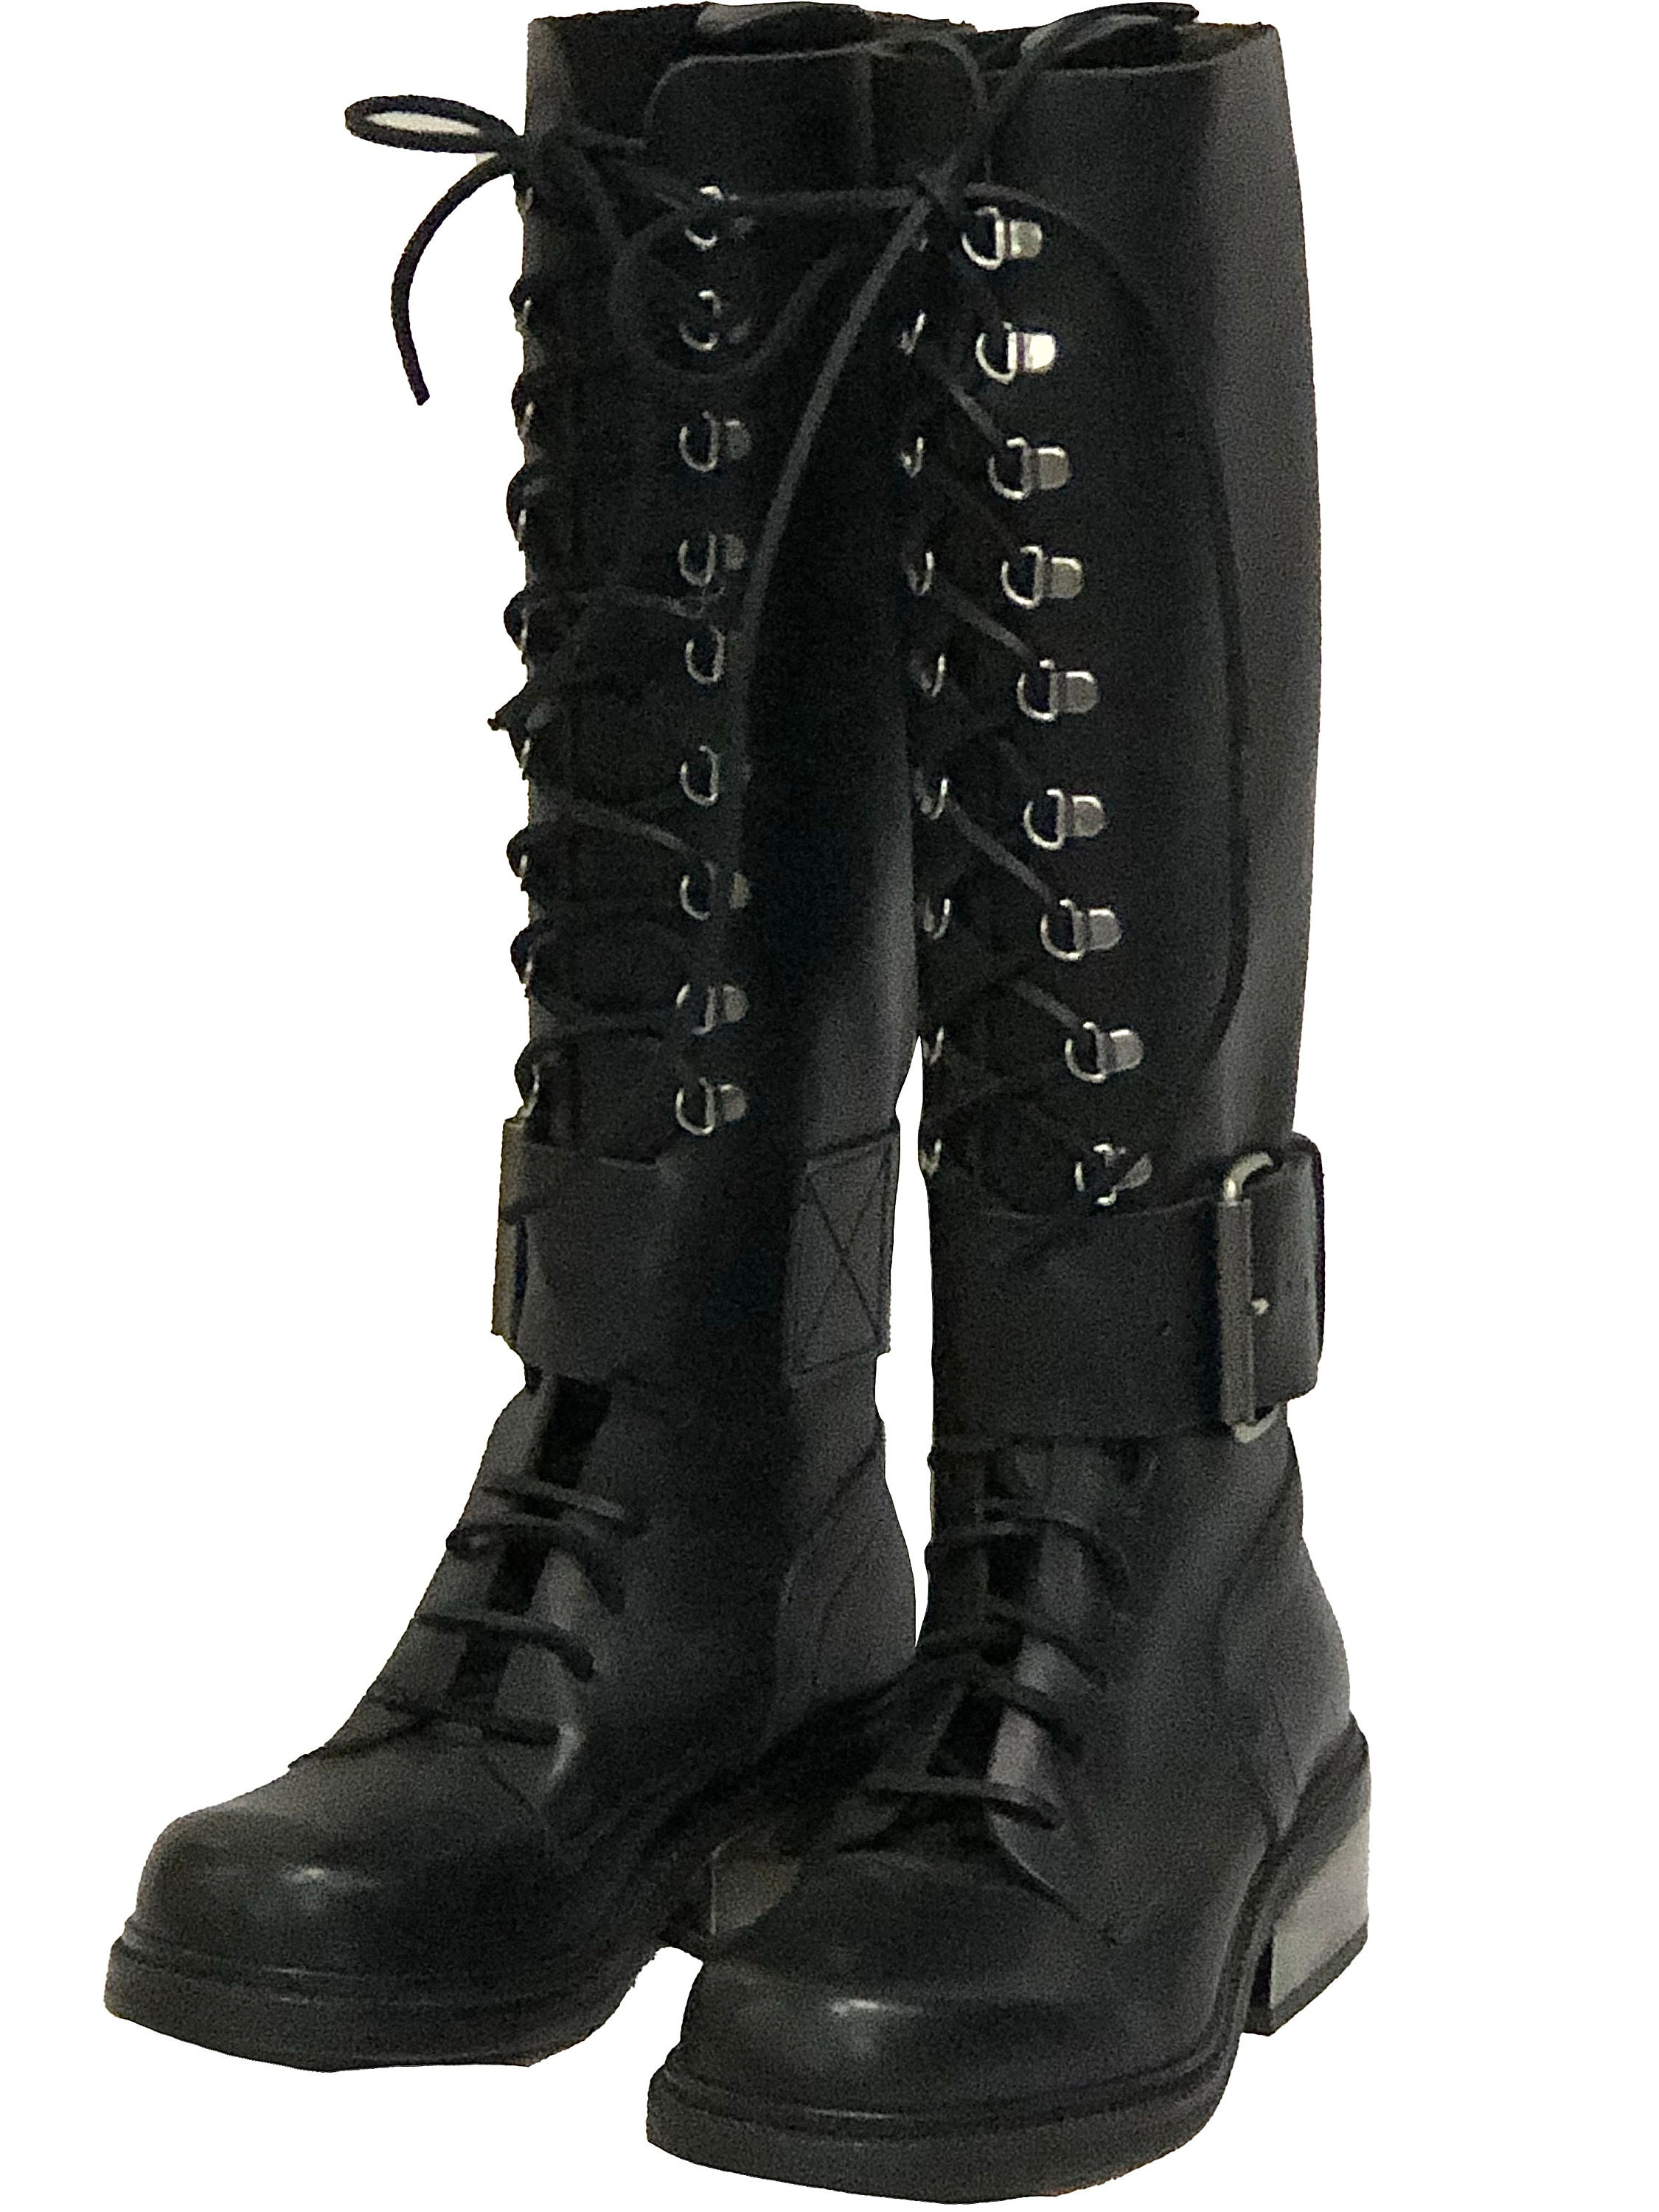 Vintage DIRK BIKKEMBERGS Boots Combat Shoes Logo Black Leather